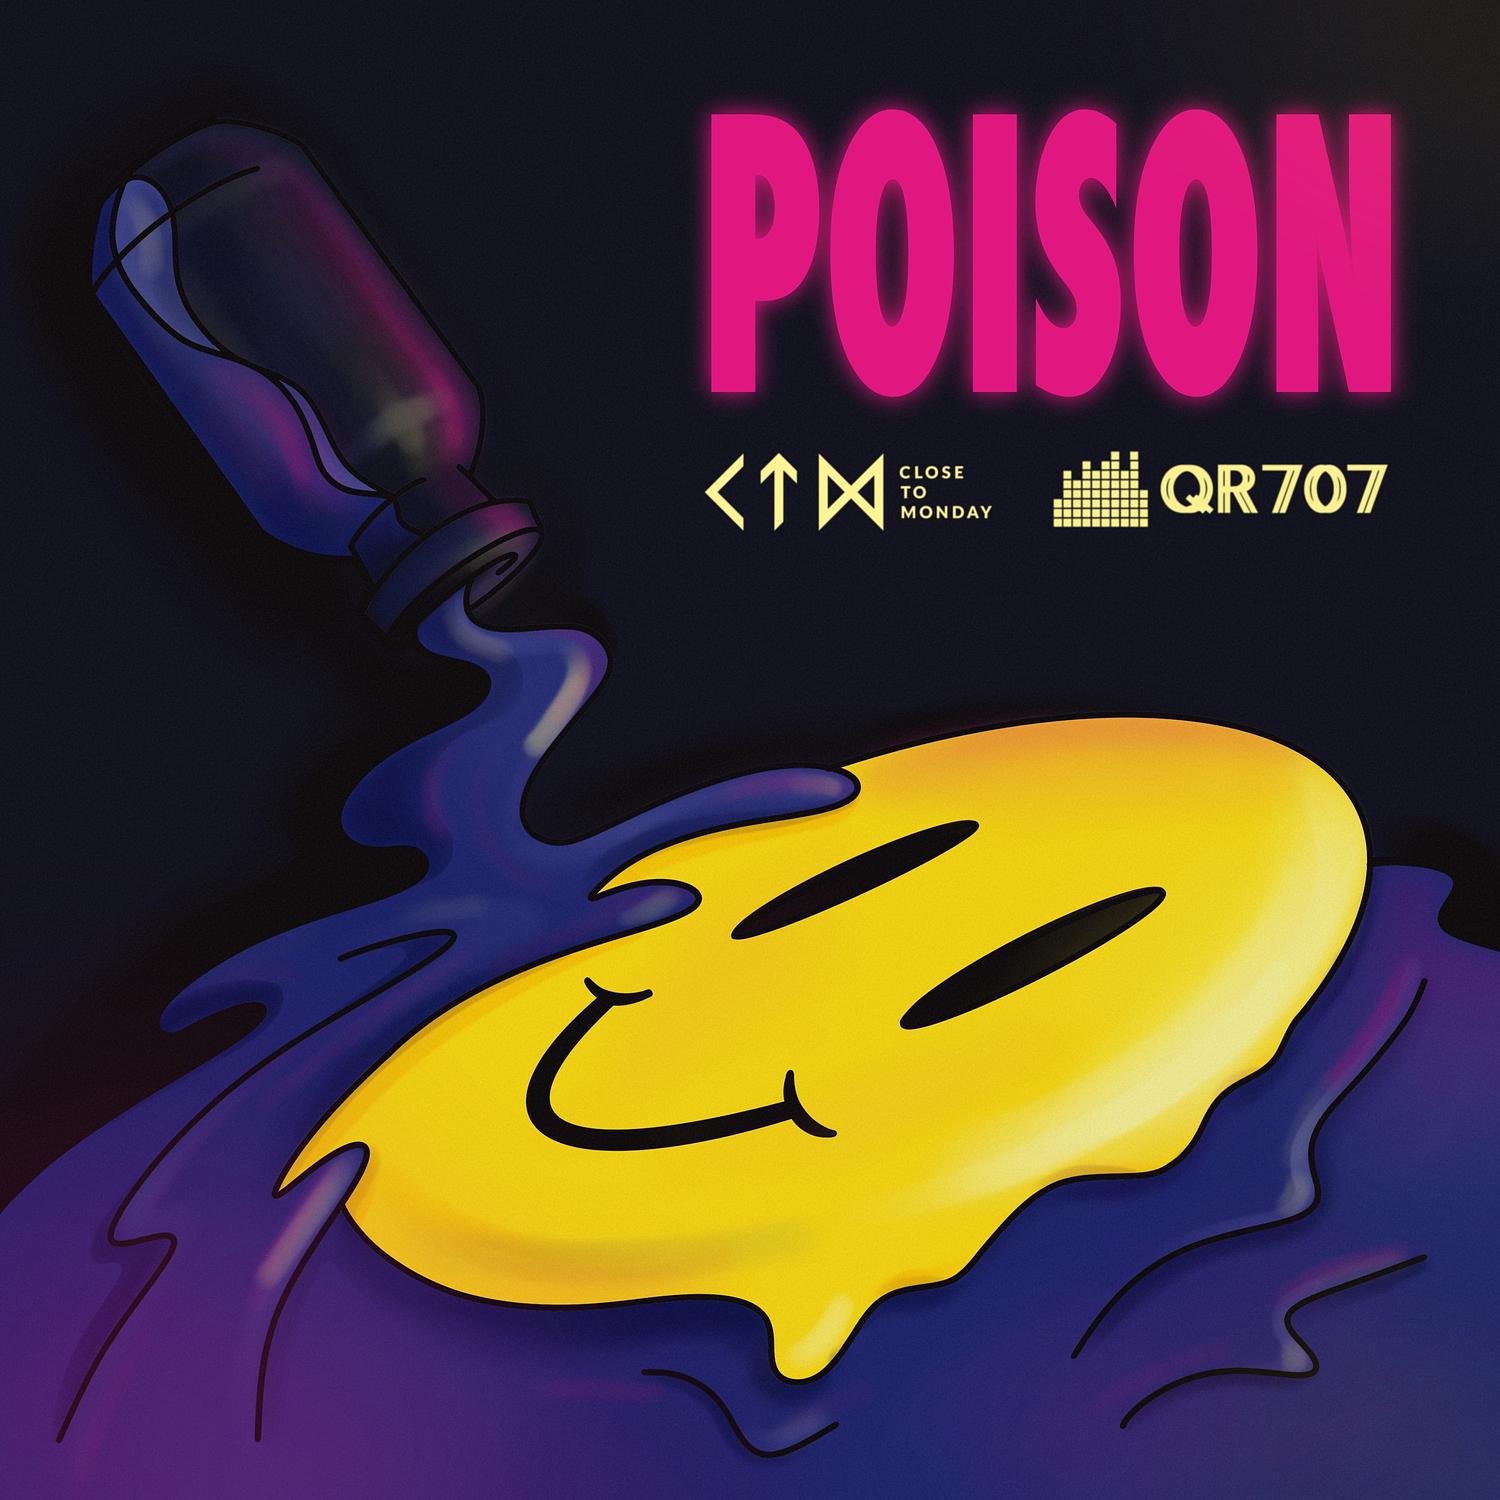 Close to Monday - Poison